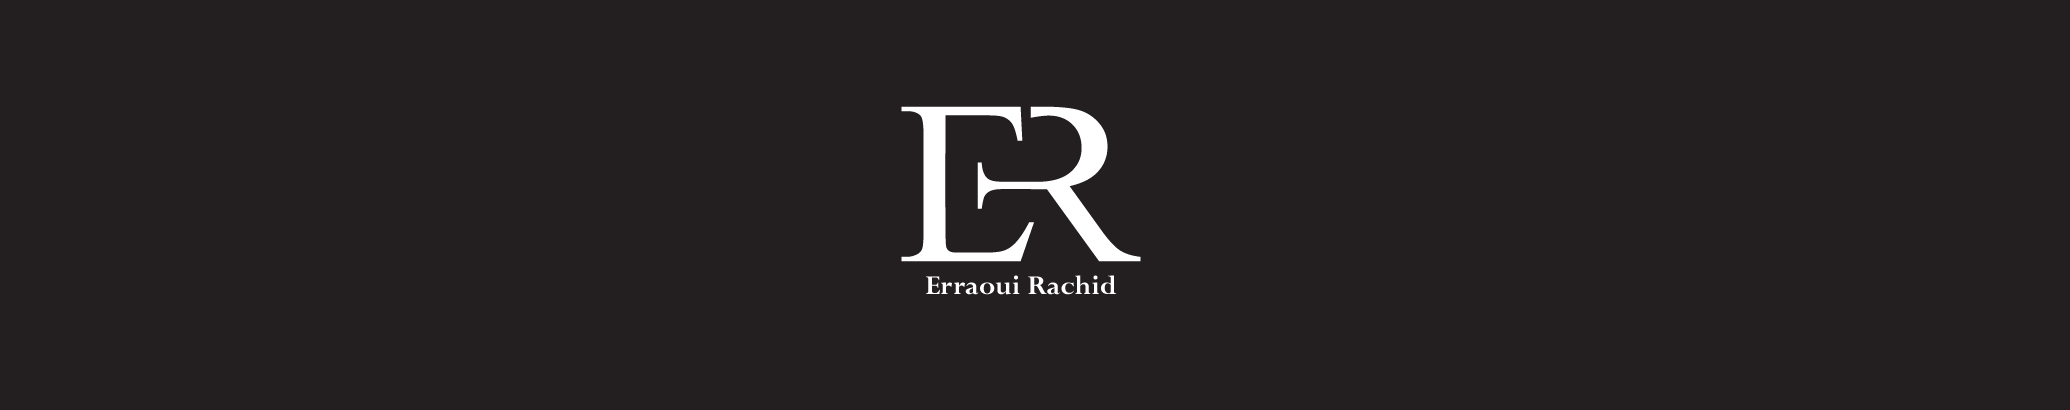 Rachid ERRAOUI's profile banner